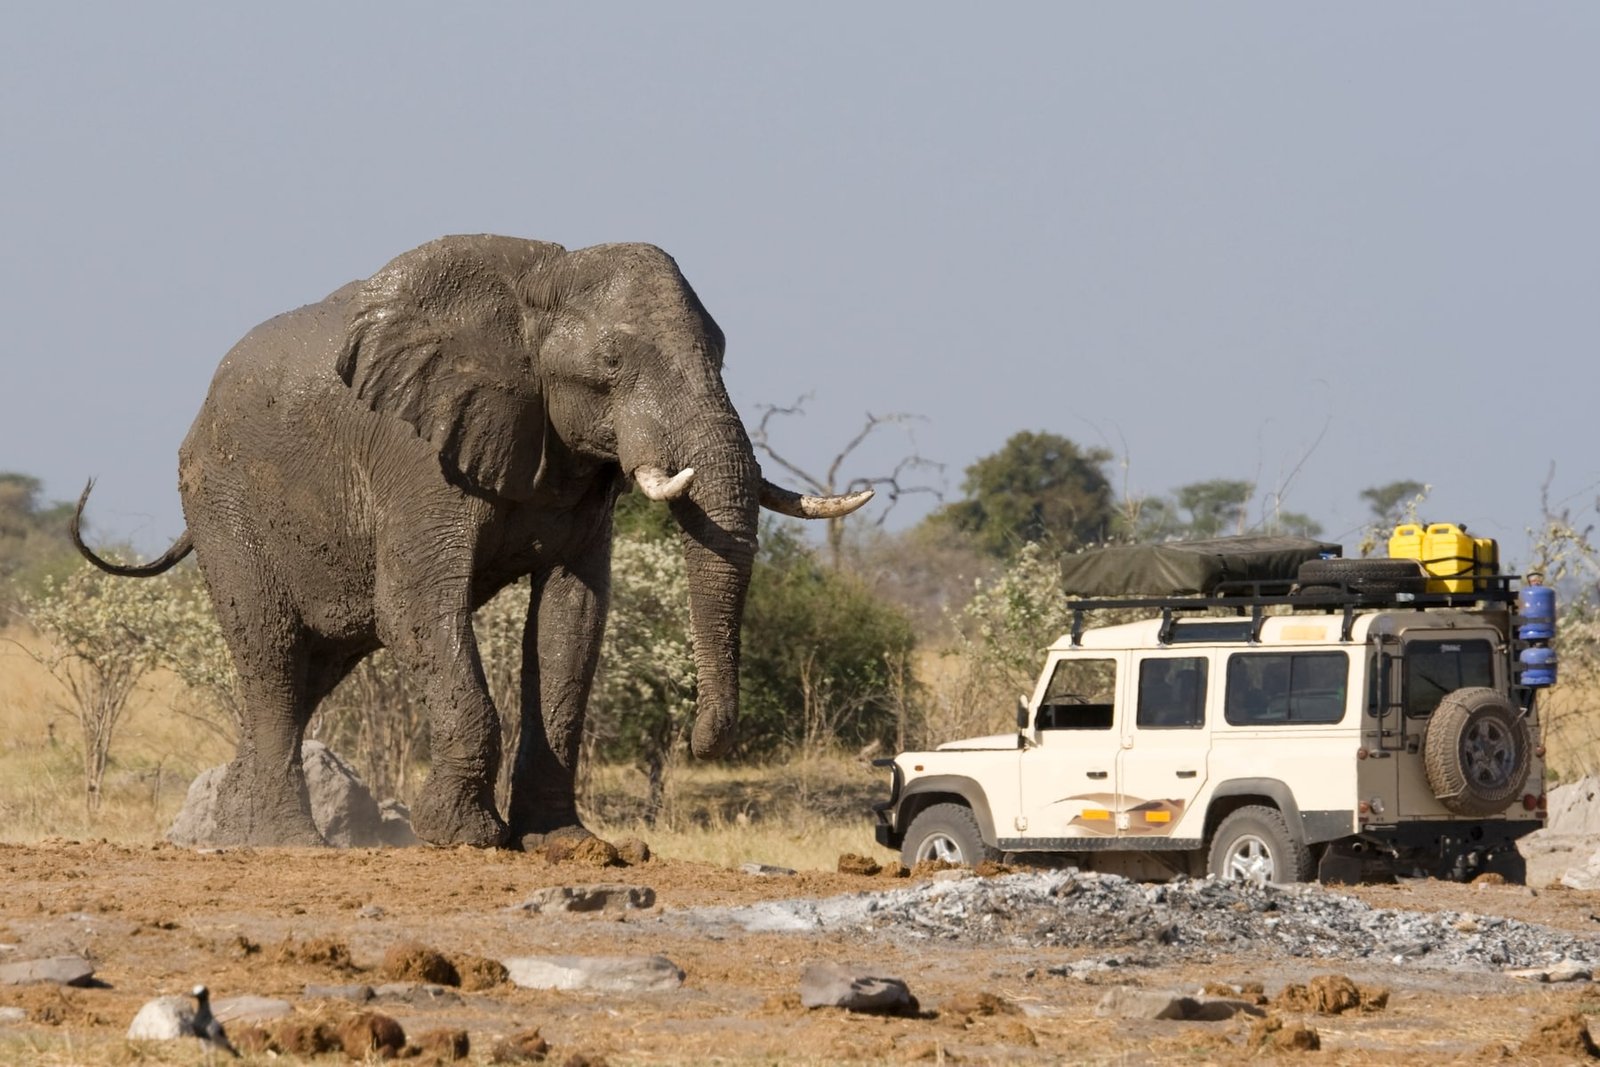 Un safari por Botsuana es una de esas vacaciones de ensueño que todos merecemos vivir una vez en la vida.